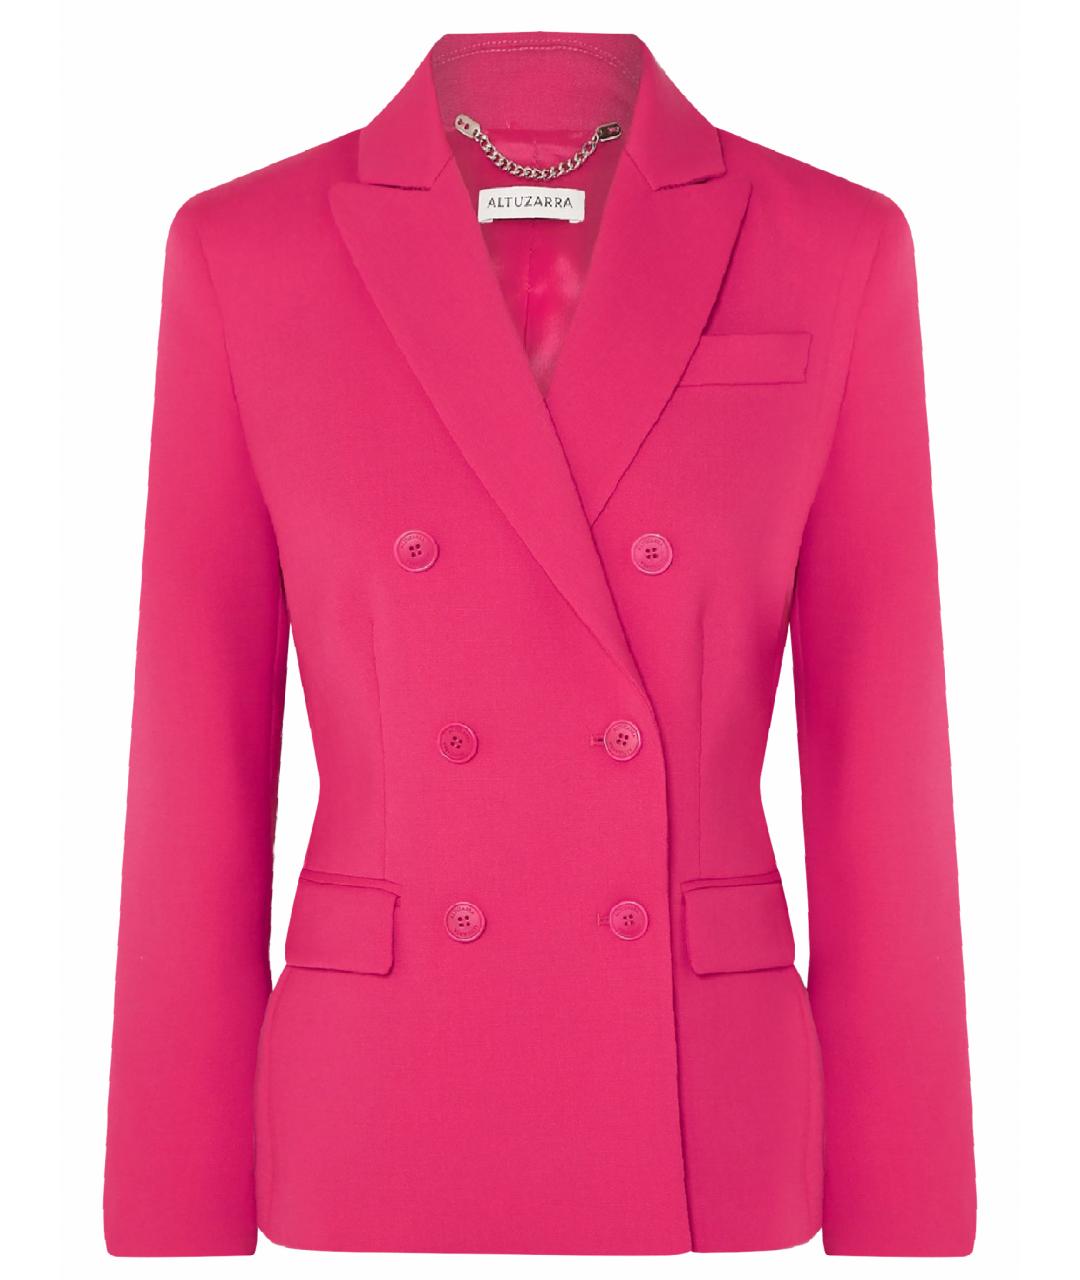 ALTUZARRA Розовый шерстяной жакет/пиджак, фото 1